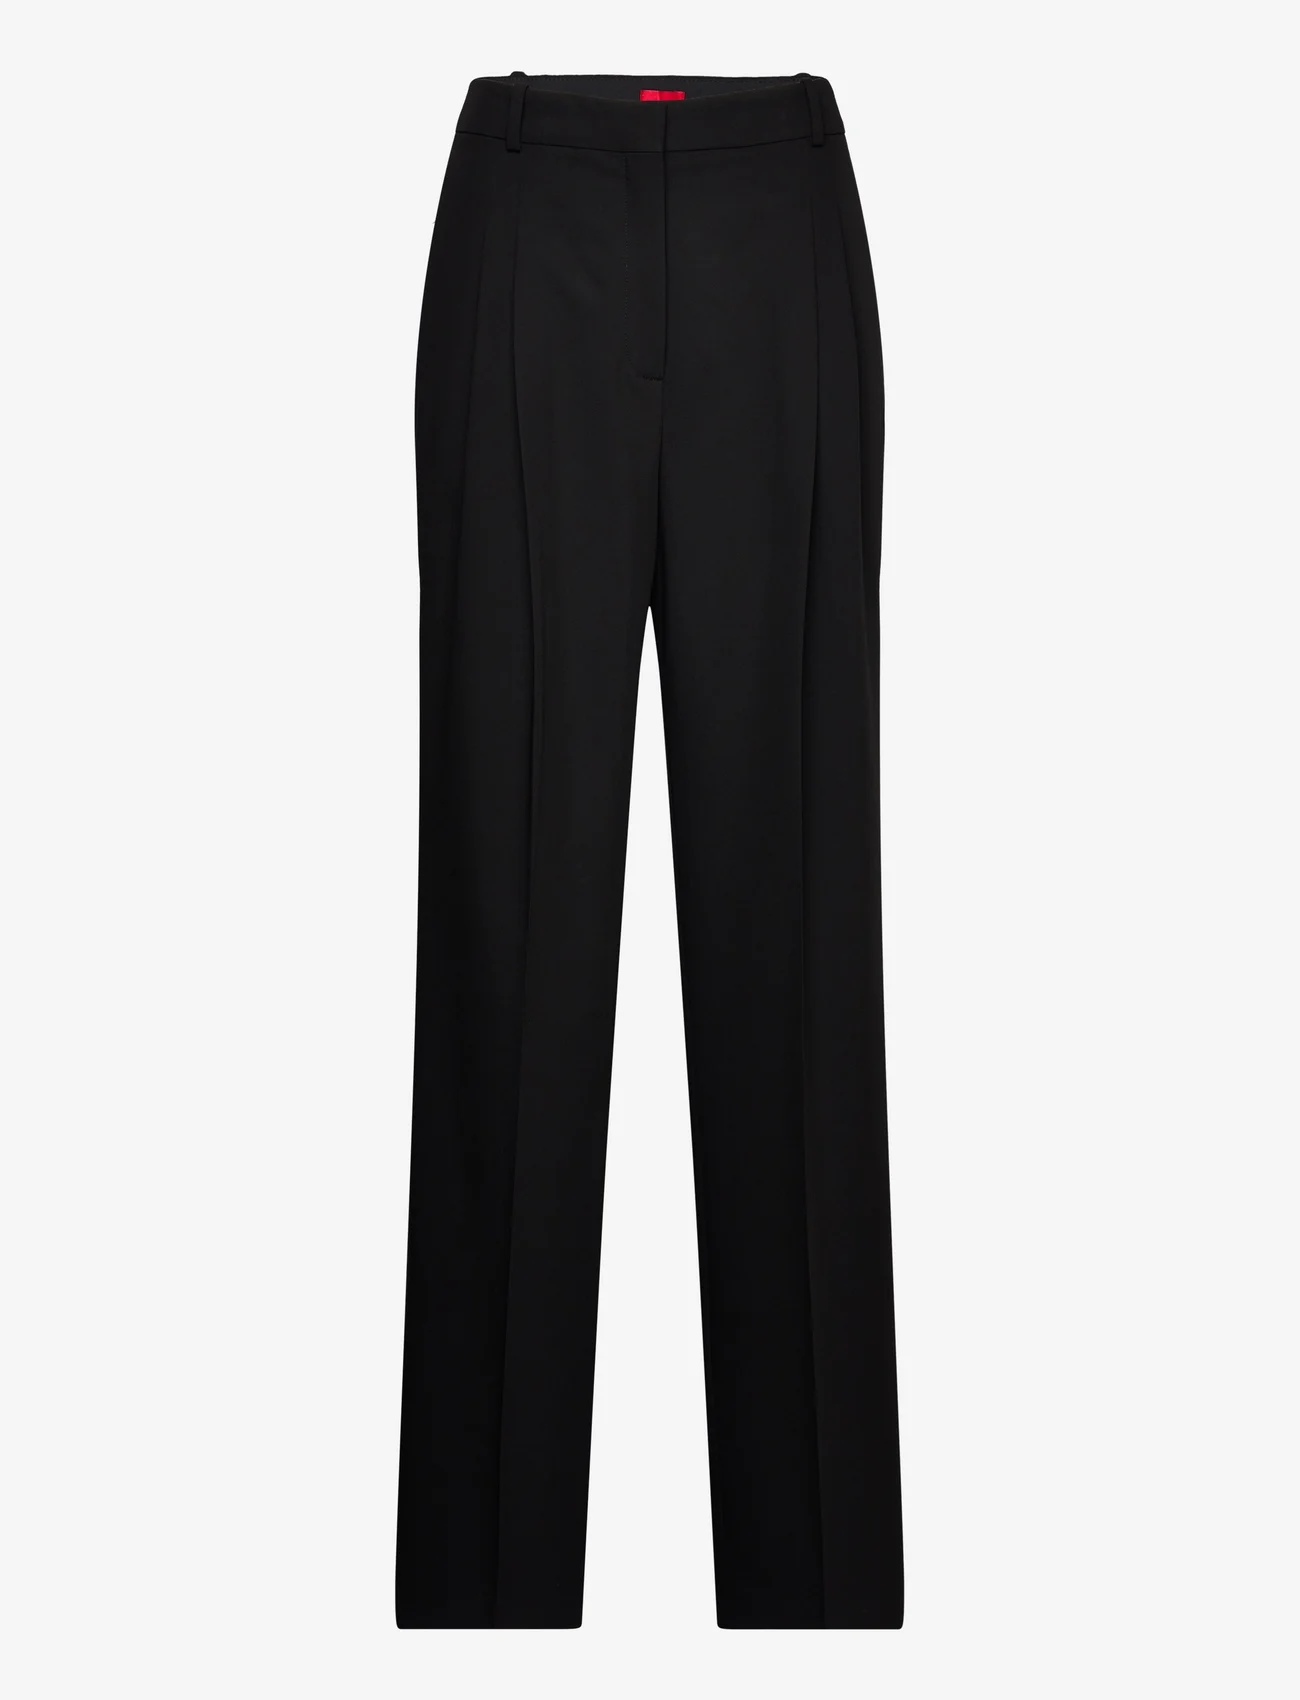 HUGO - Havira - tailored trousers - black - 0